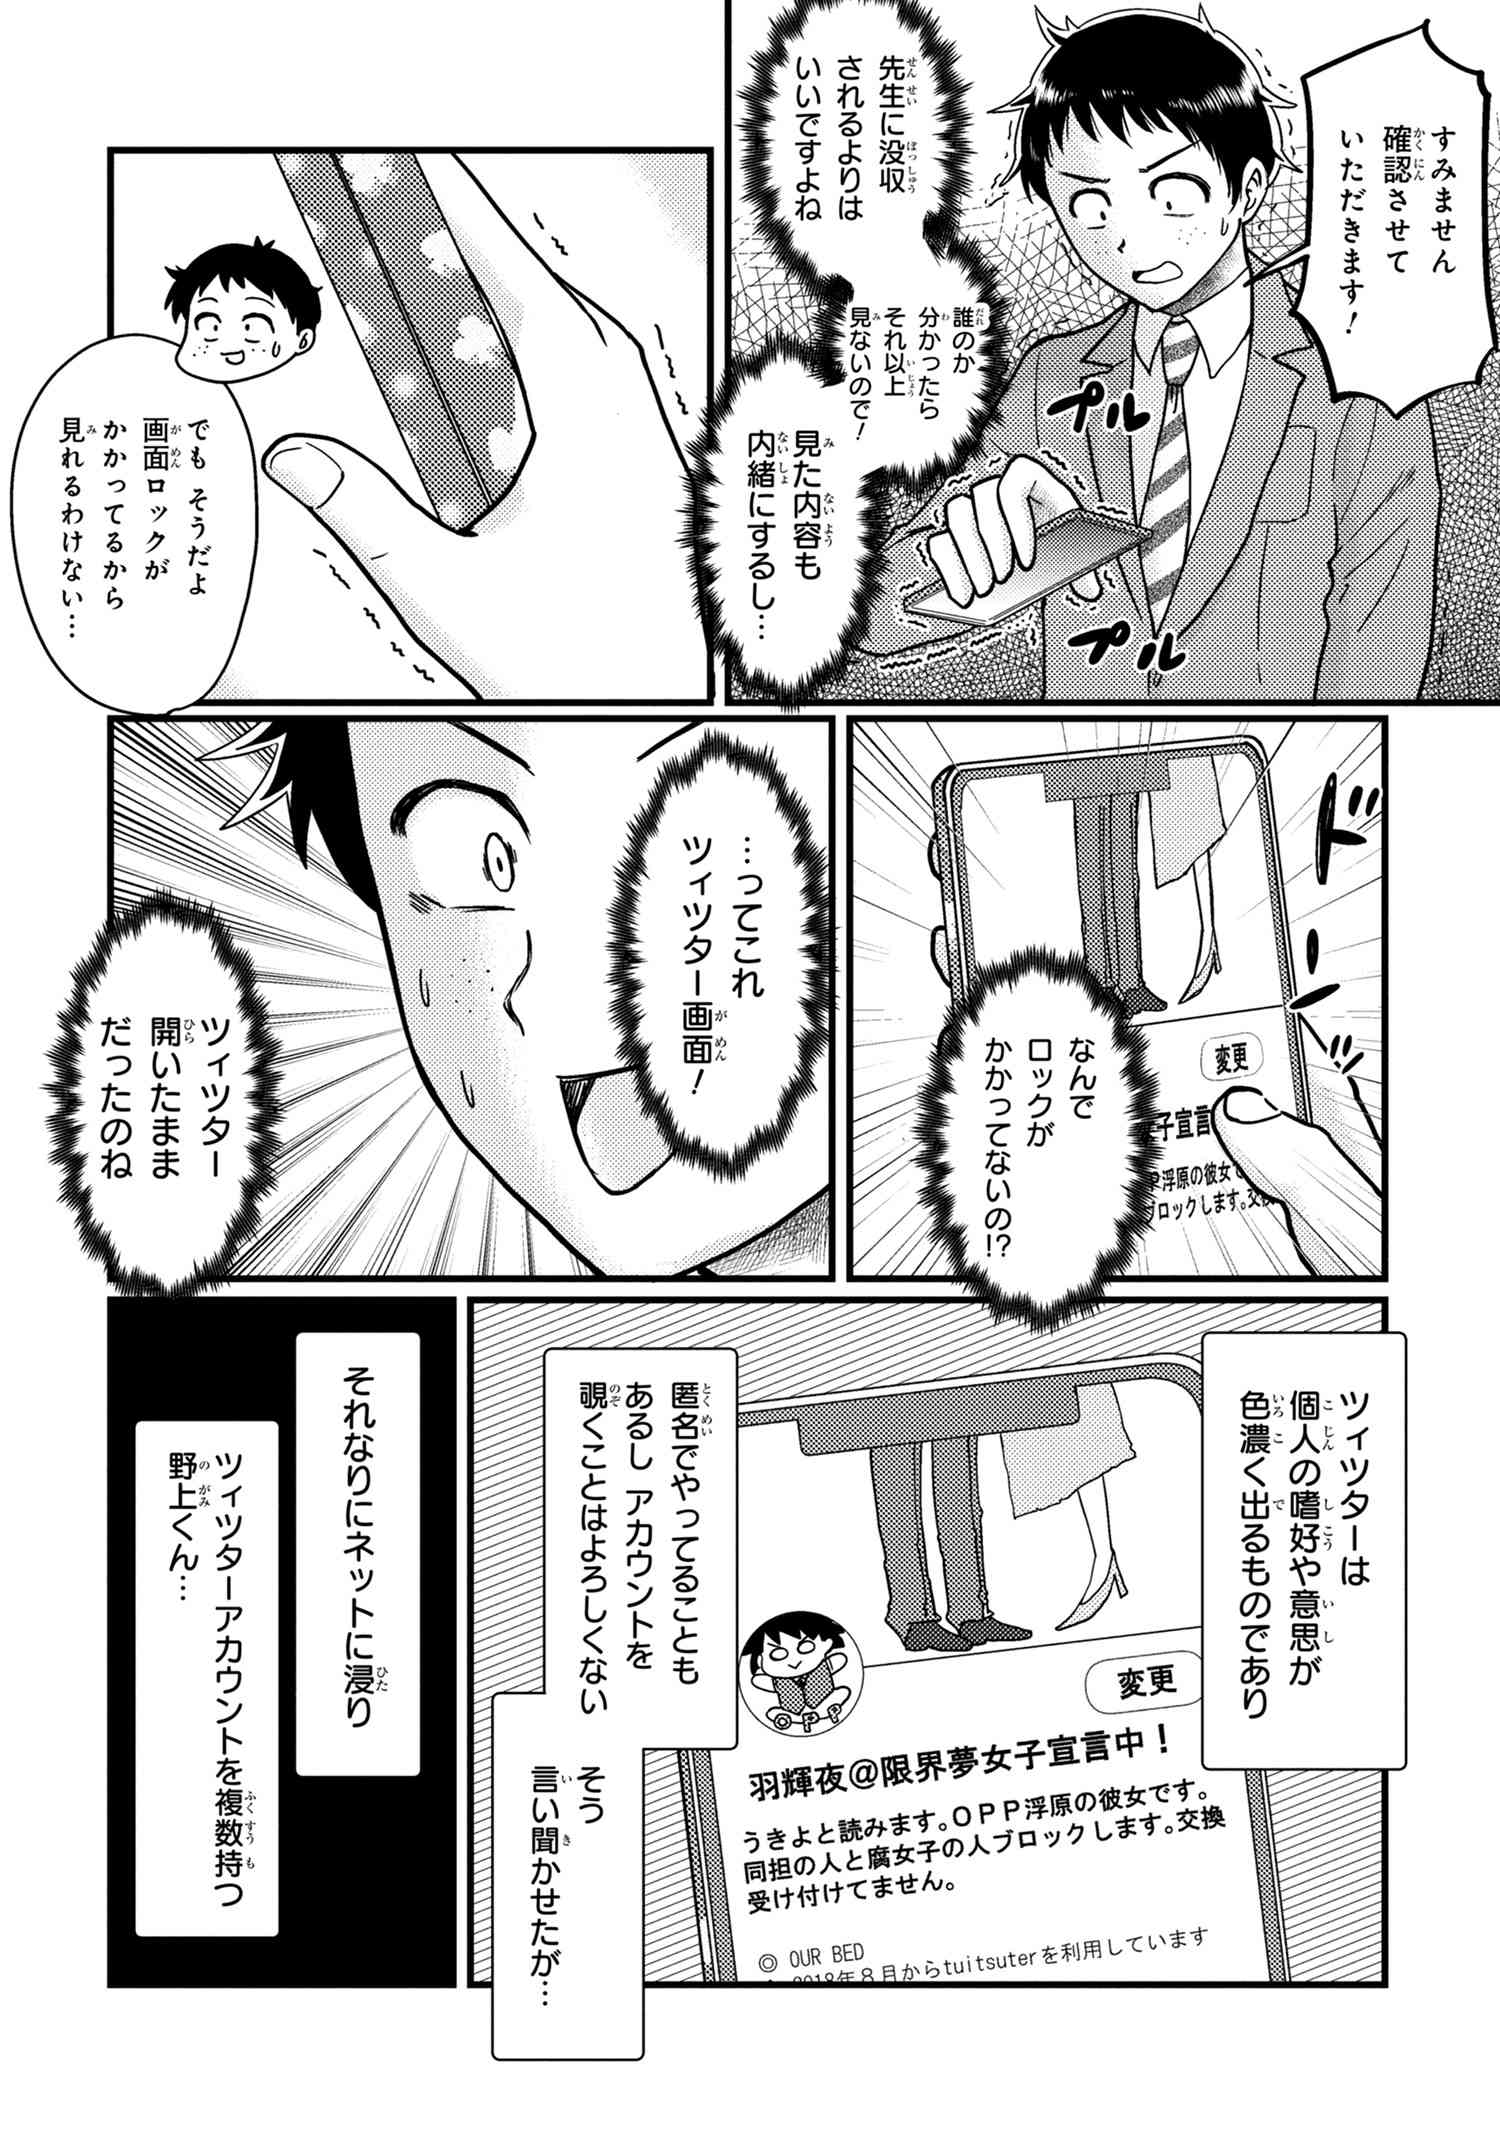 Houjou Urara no renai shousetsu o kaki nasai! - Chapter 10 - Page 2